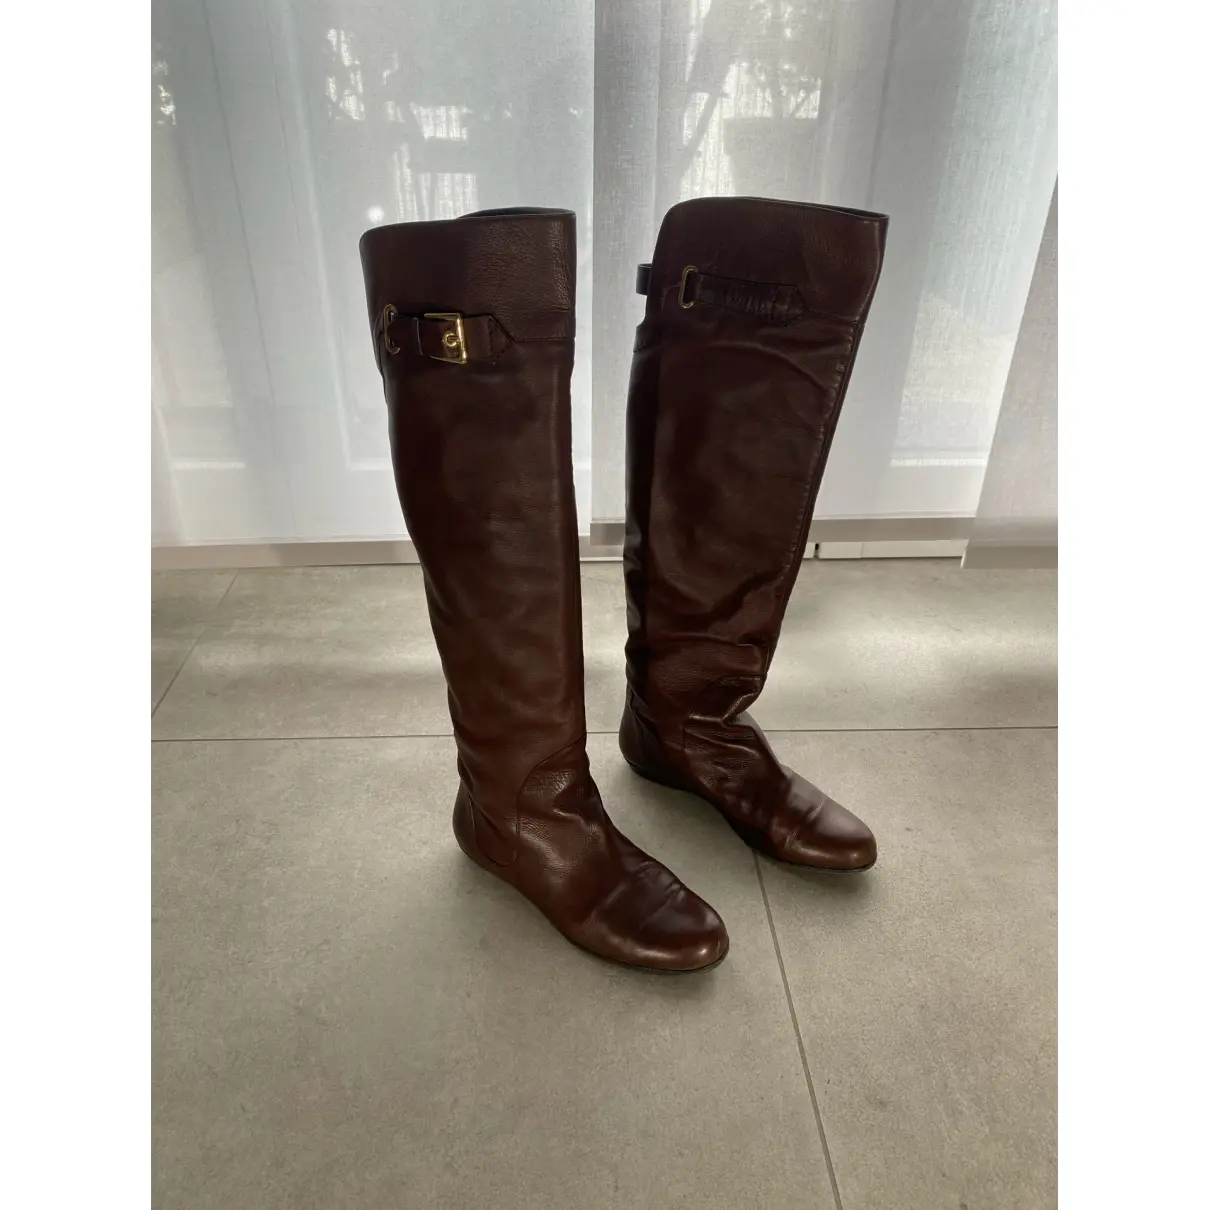 Buy Gianmarco Lorenzi Leather riding boots online